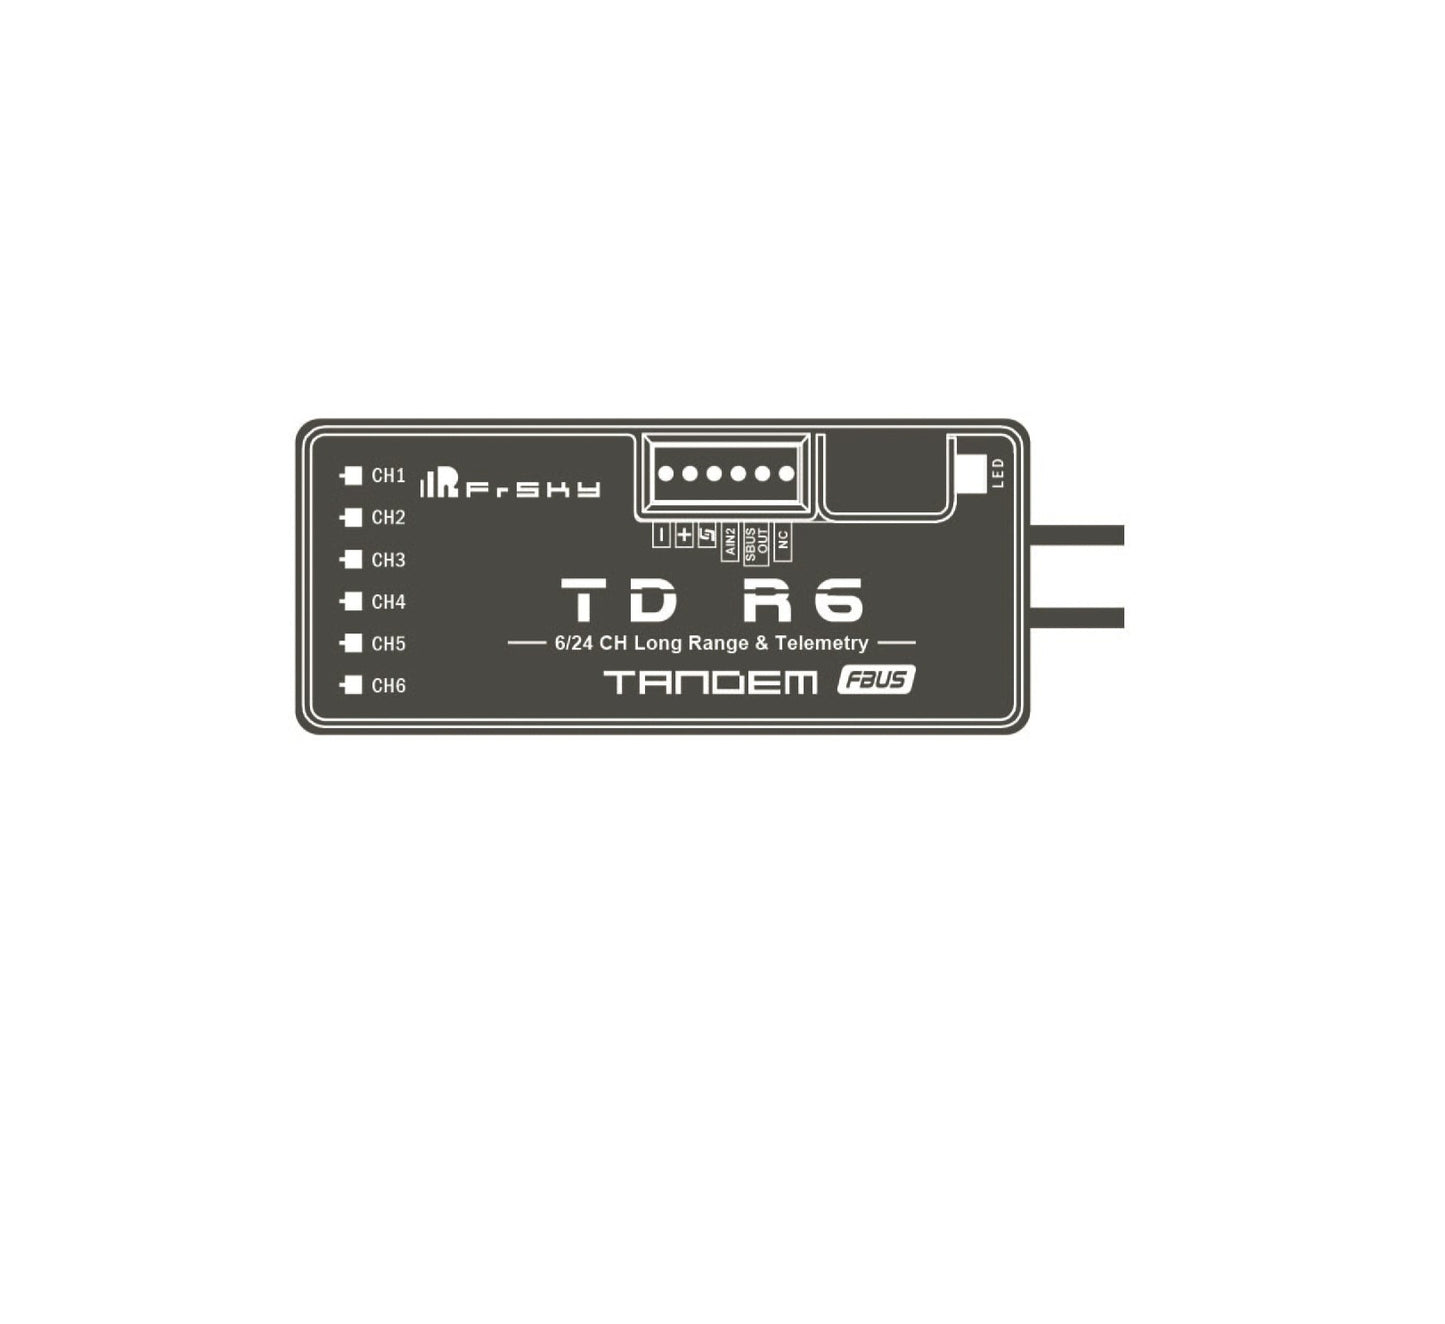 FrSky TDR6 RX 2.4Ghz or 900Mhz